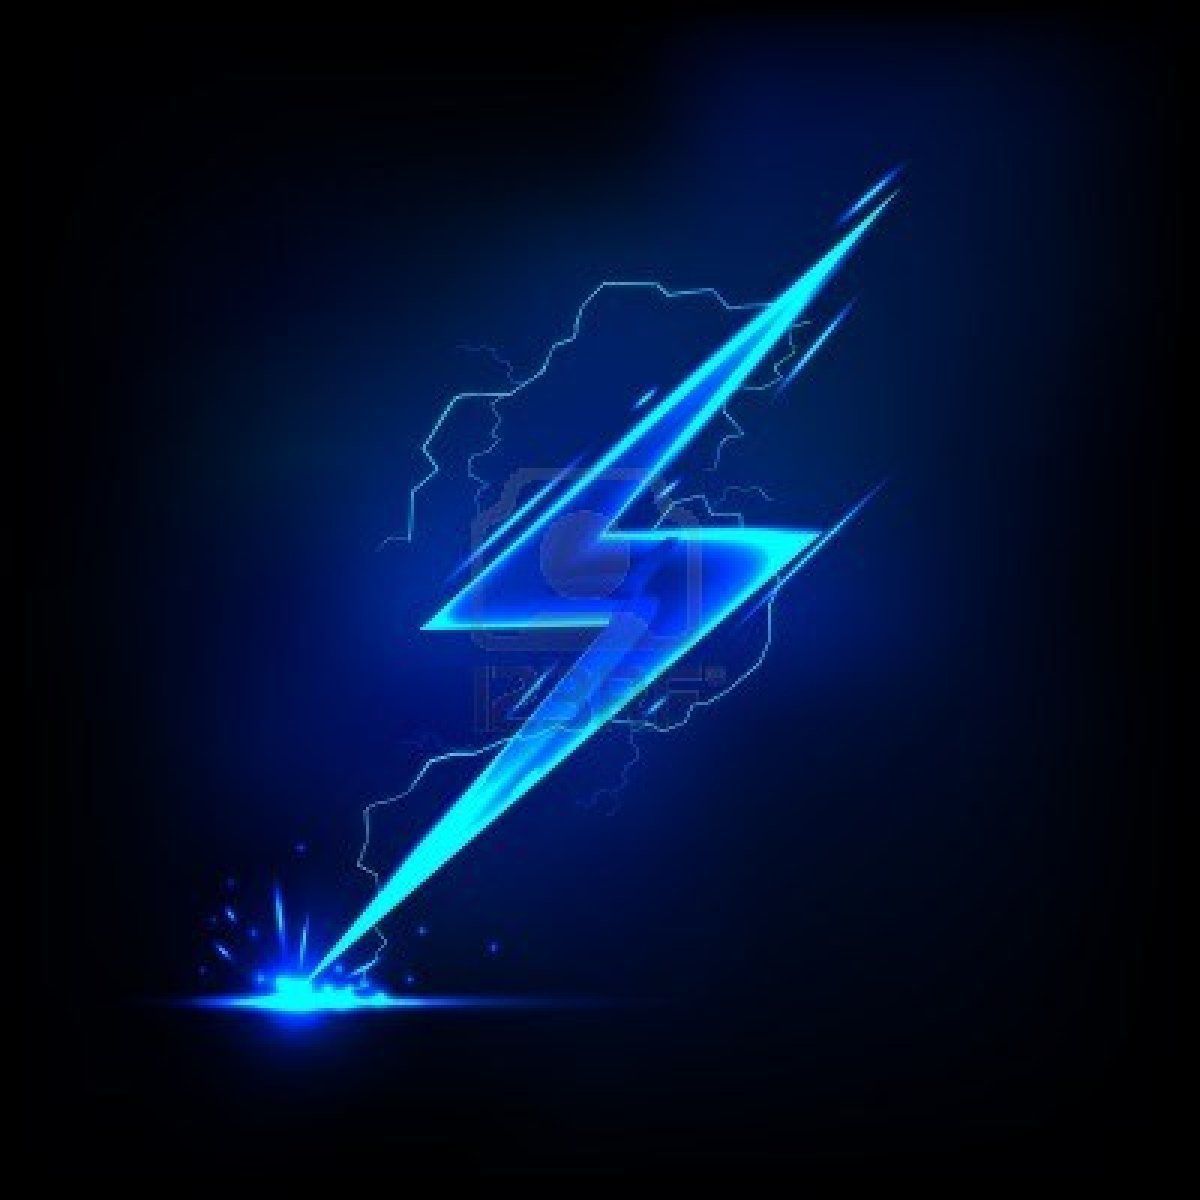 Blue Lightning Wallpaper. Flash wallpaper, Flash logo, Blue lightning